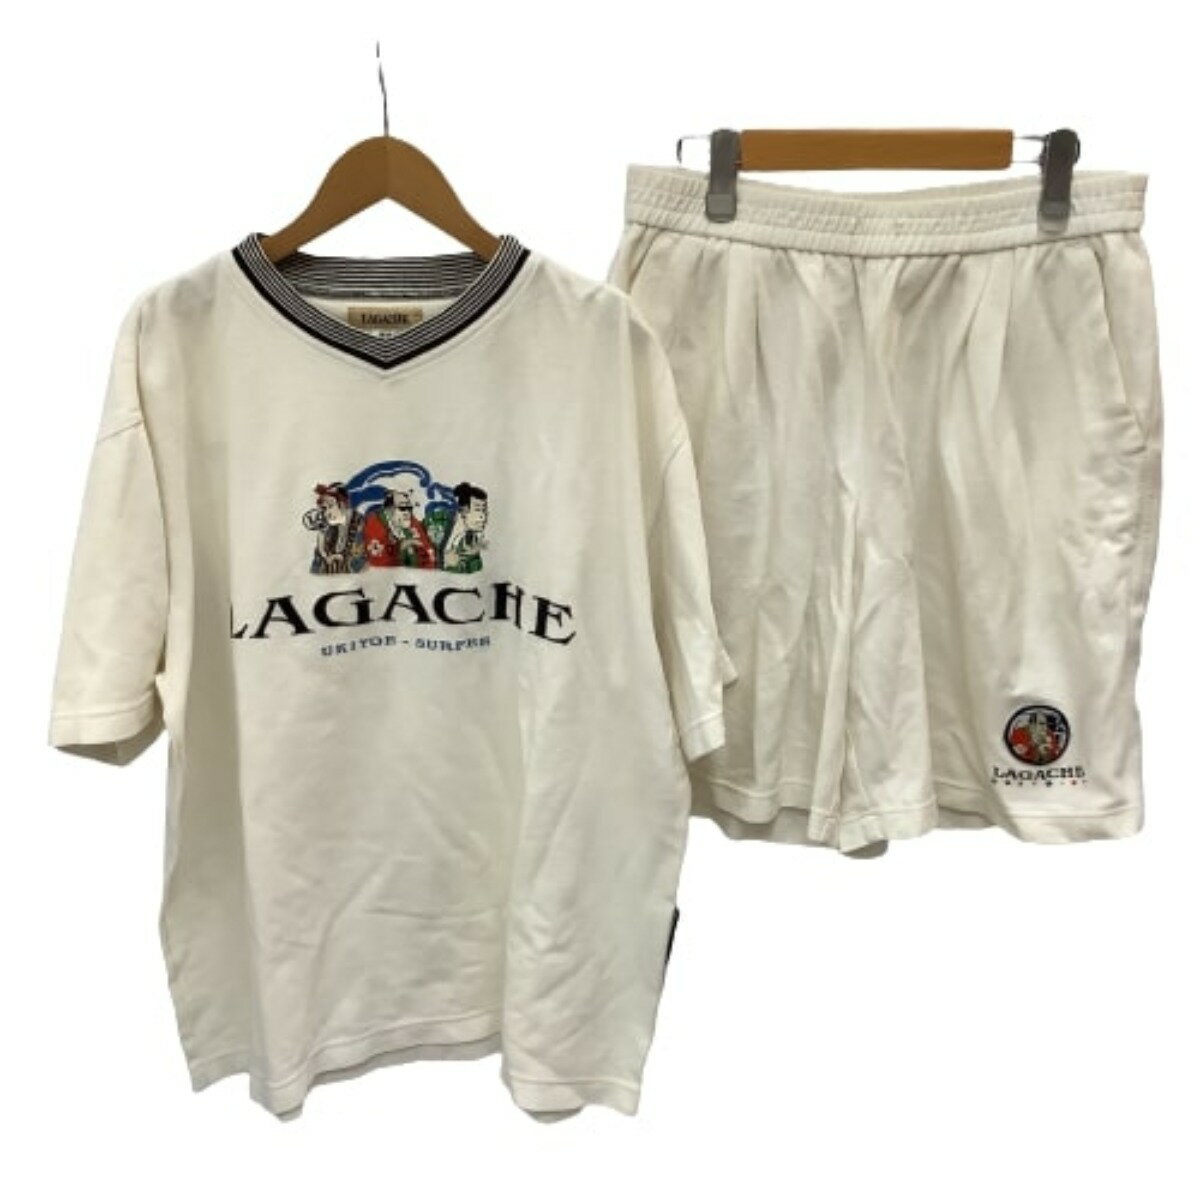 ♪♪【中古】LAGACHE ラガチェ メンズ セットアップ SIZE 48 浮世絵 サーファー ホワイト Cランク